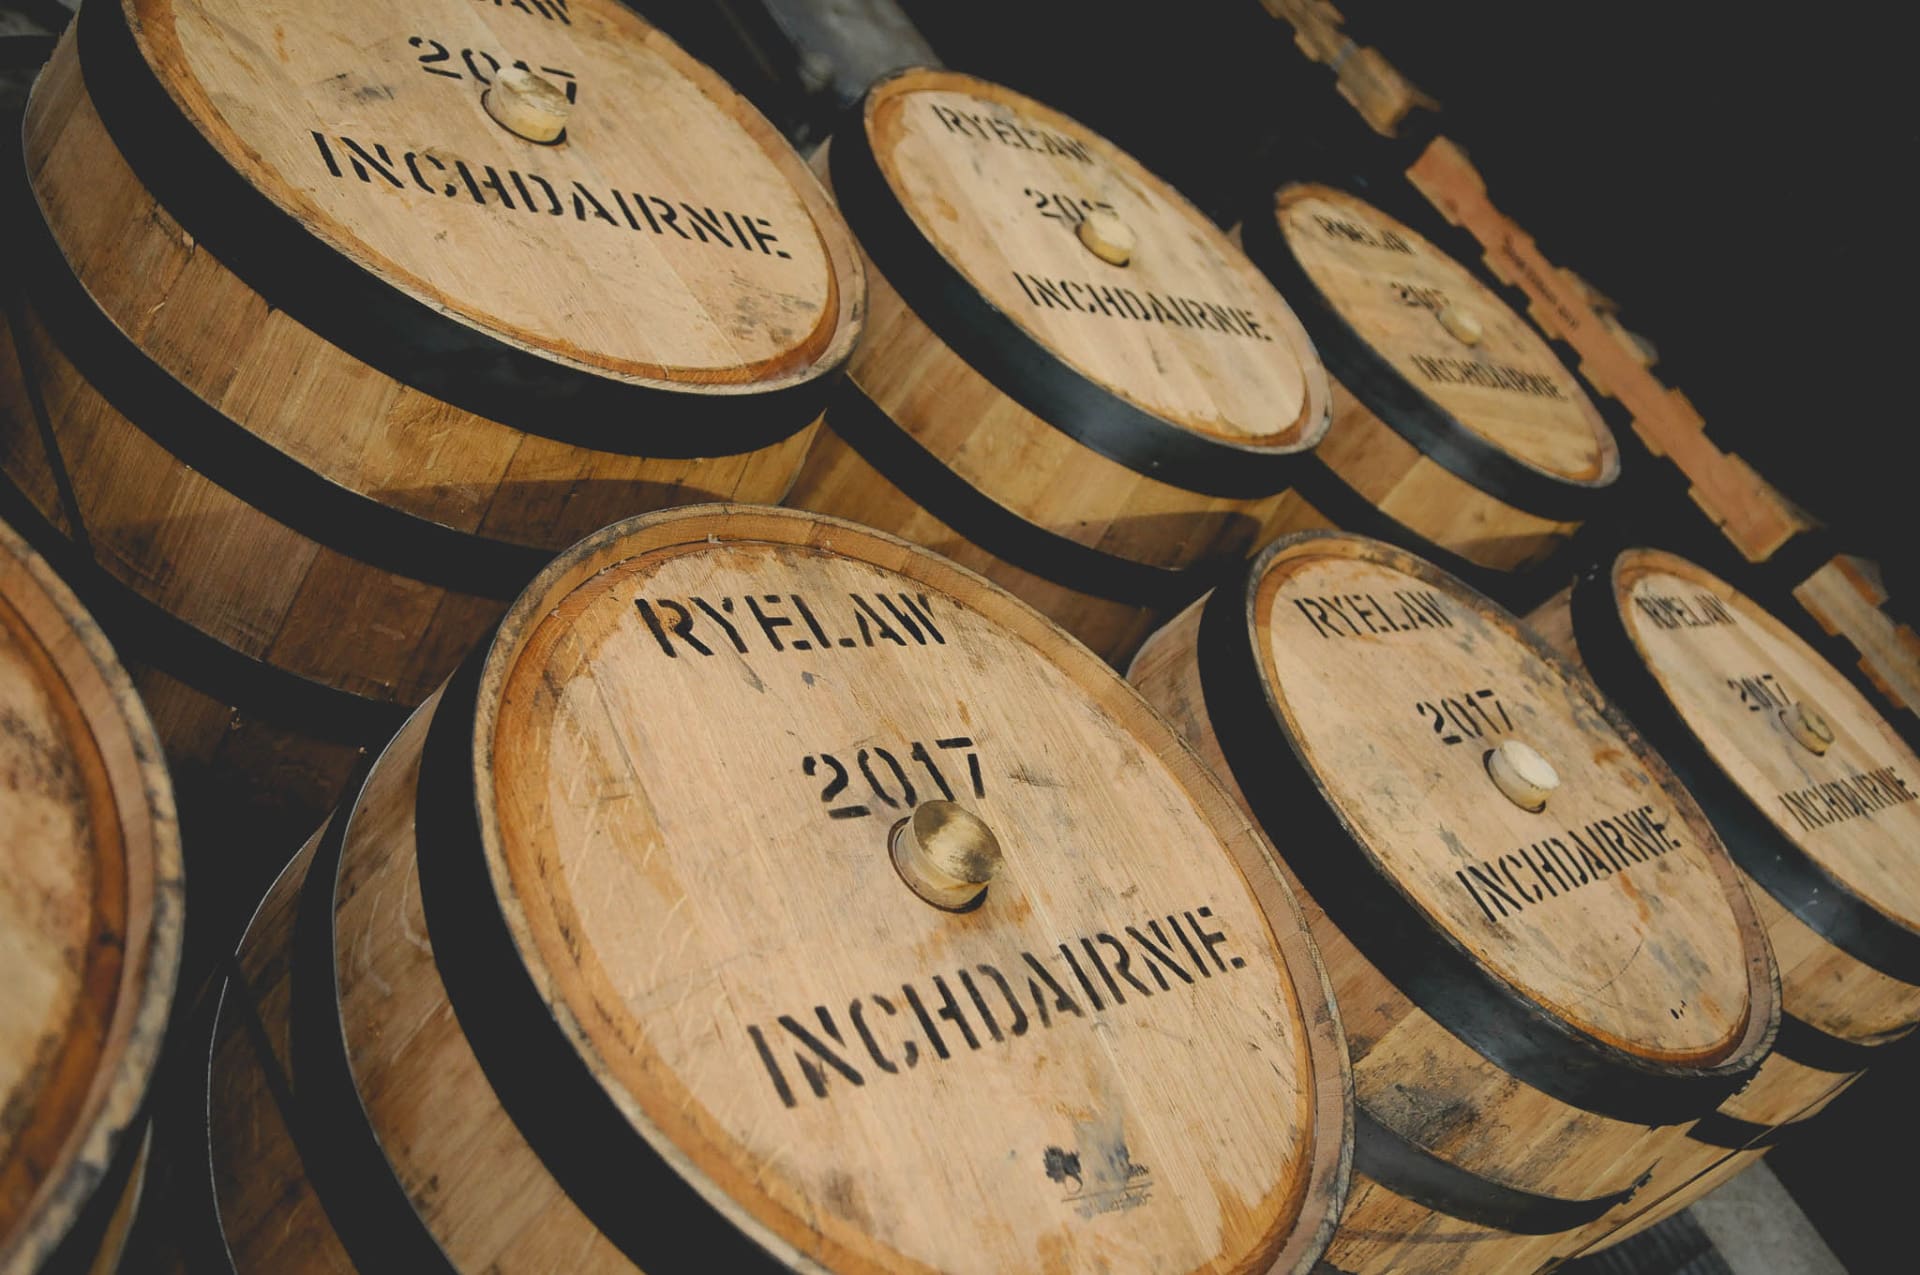 RyeLaw, Als een Schotse zalm tegen de whiskystroom in: <strong>RyeLaw van InchDairnie Distillery</strong>